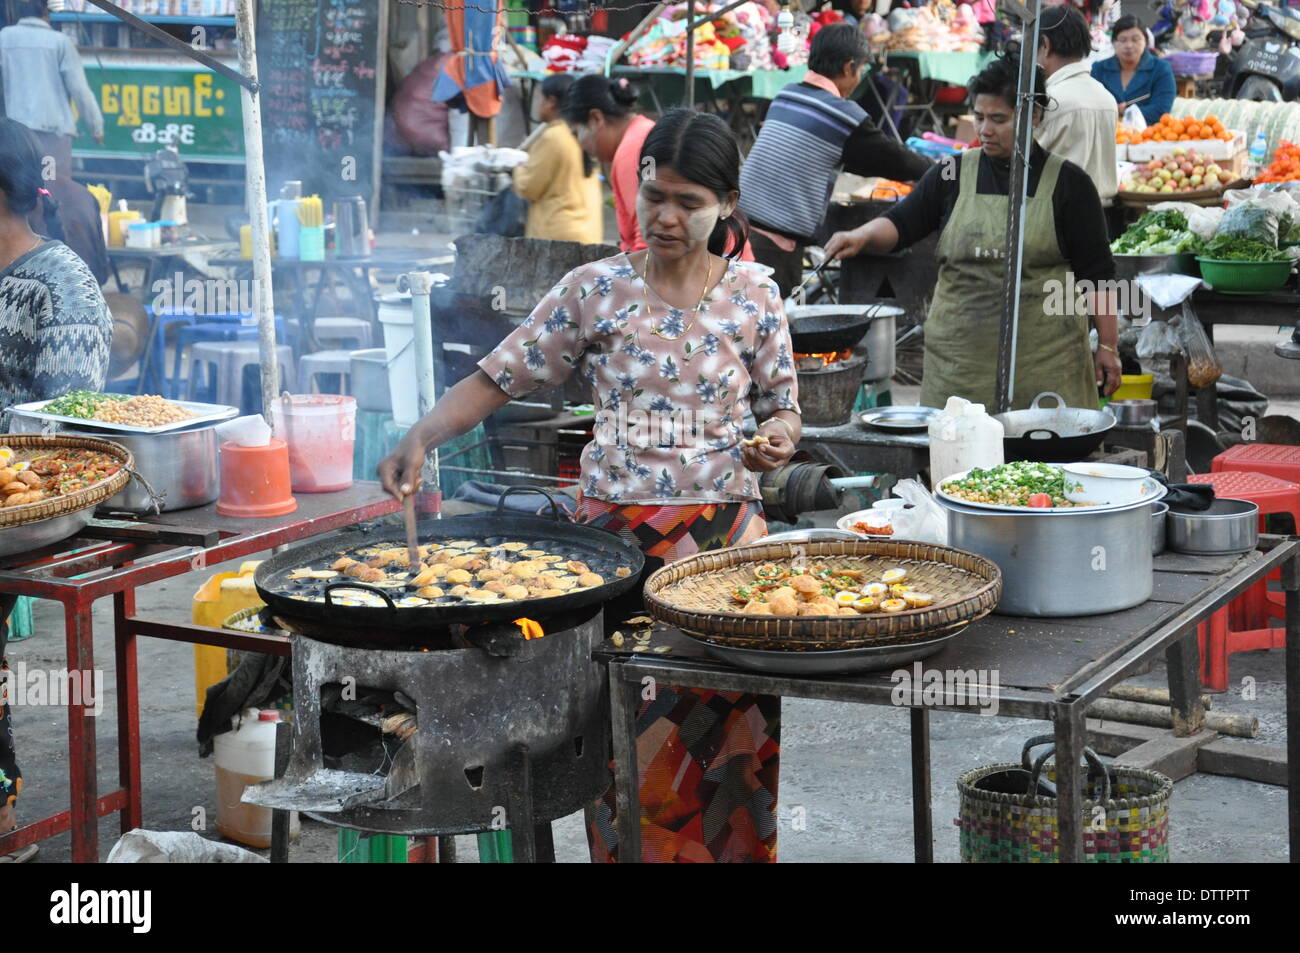 street food in burma Stock Photo